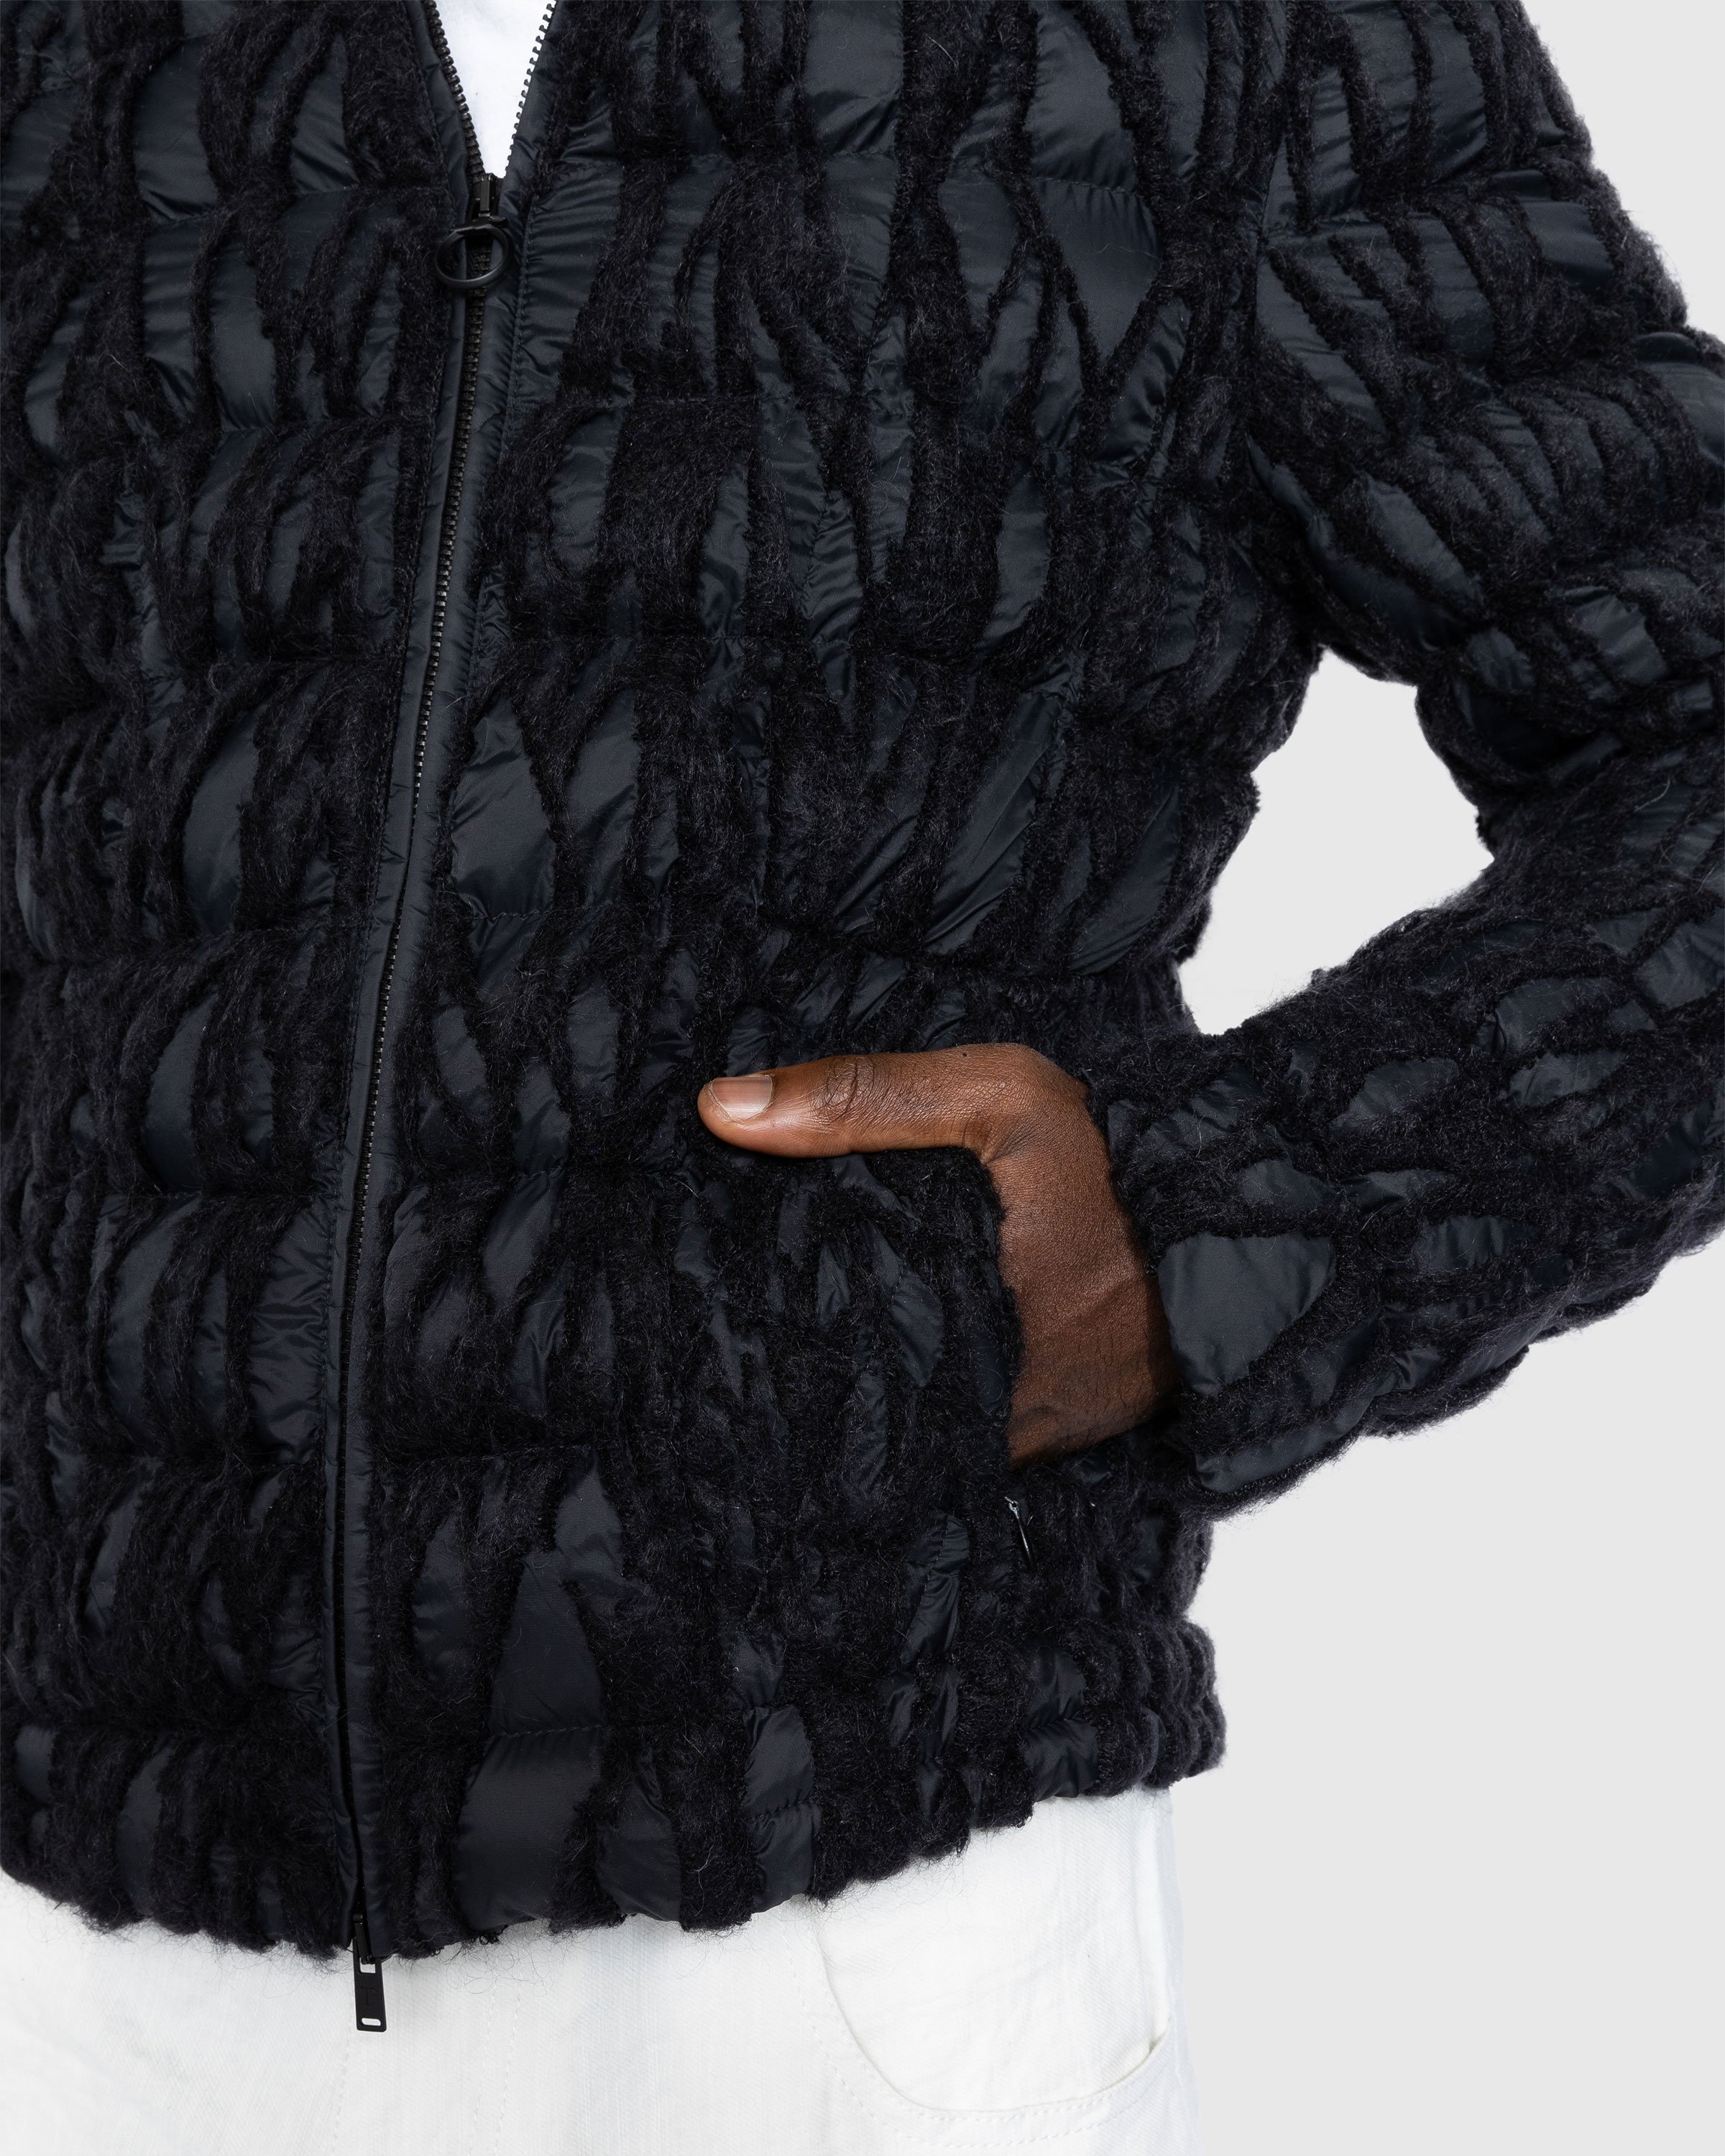 Trussardi - Embroidered Nylon Jacket Black - Clothing - Black - Image 6